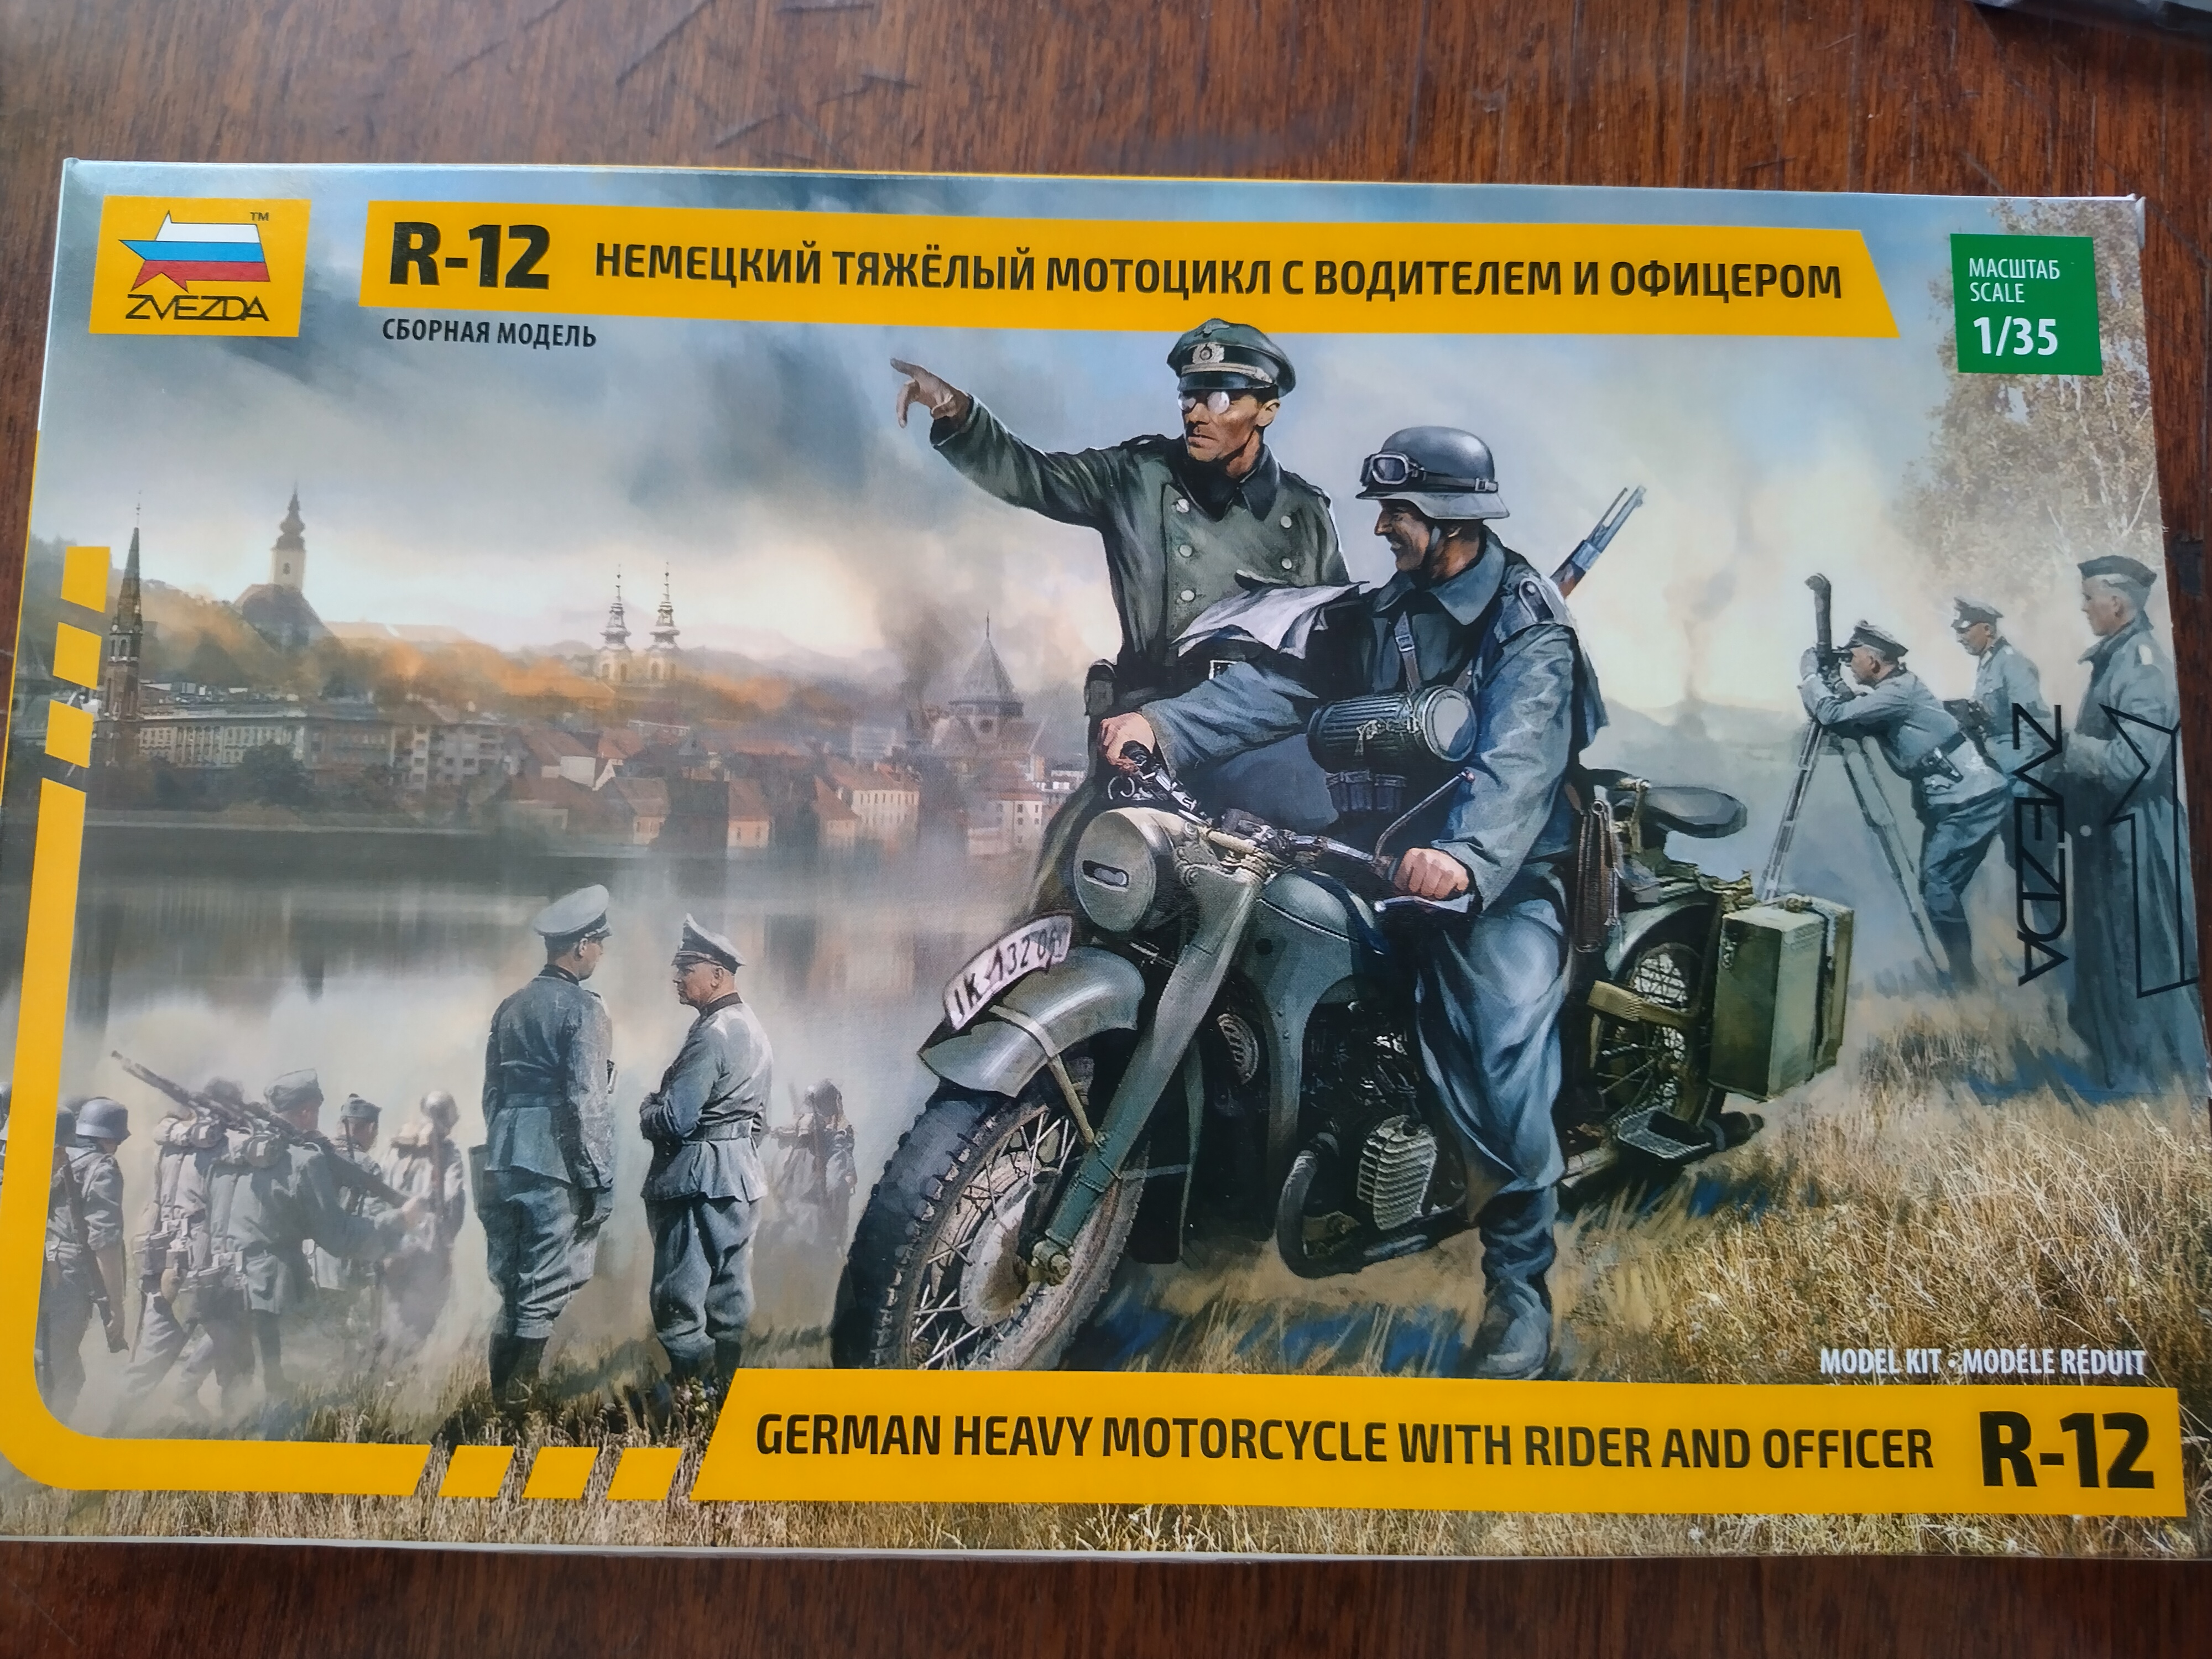 Фото Немецкий тяжелый мотоцикл Р-12 с водителем и офицером